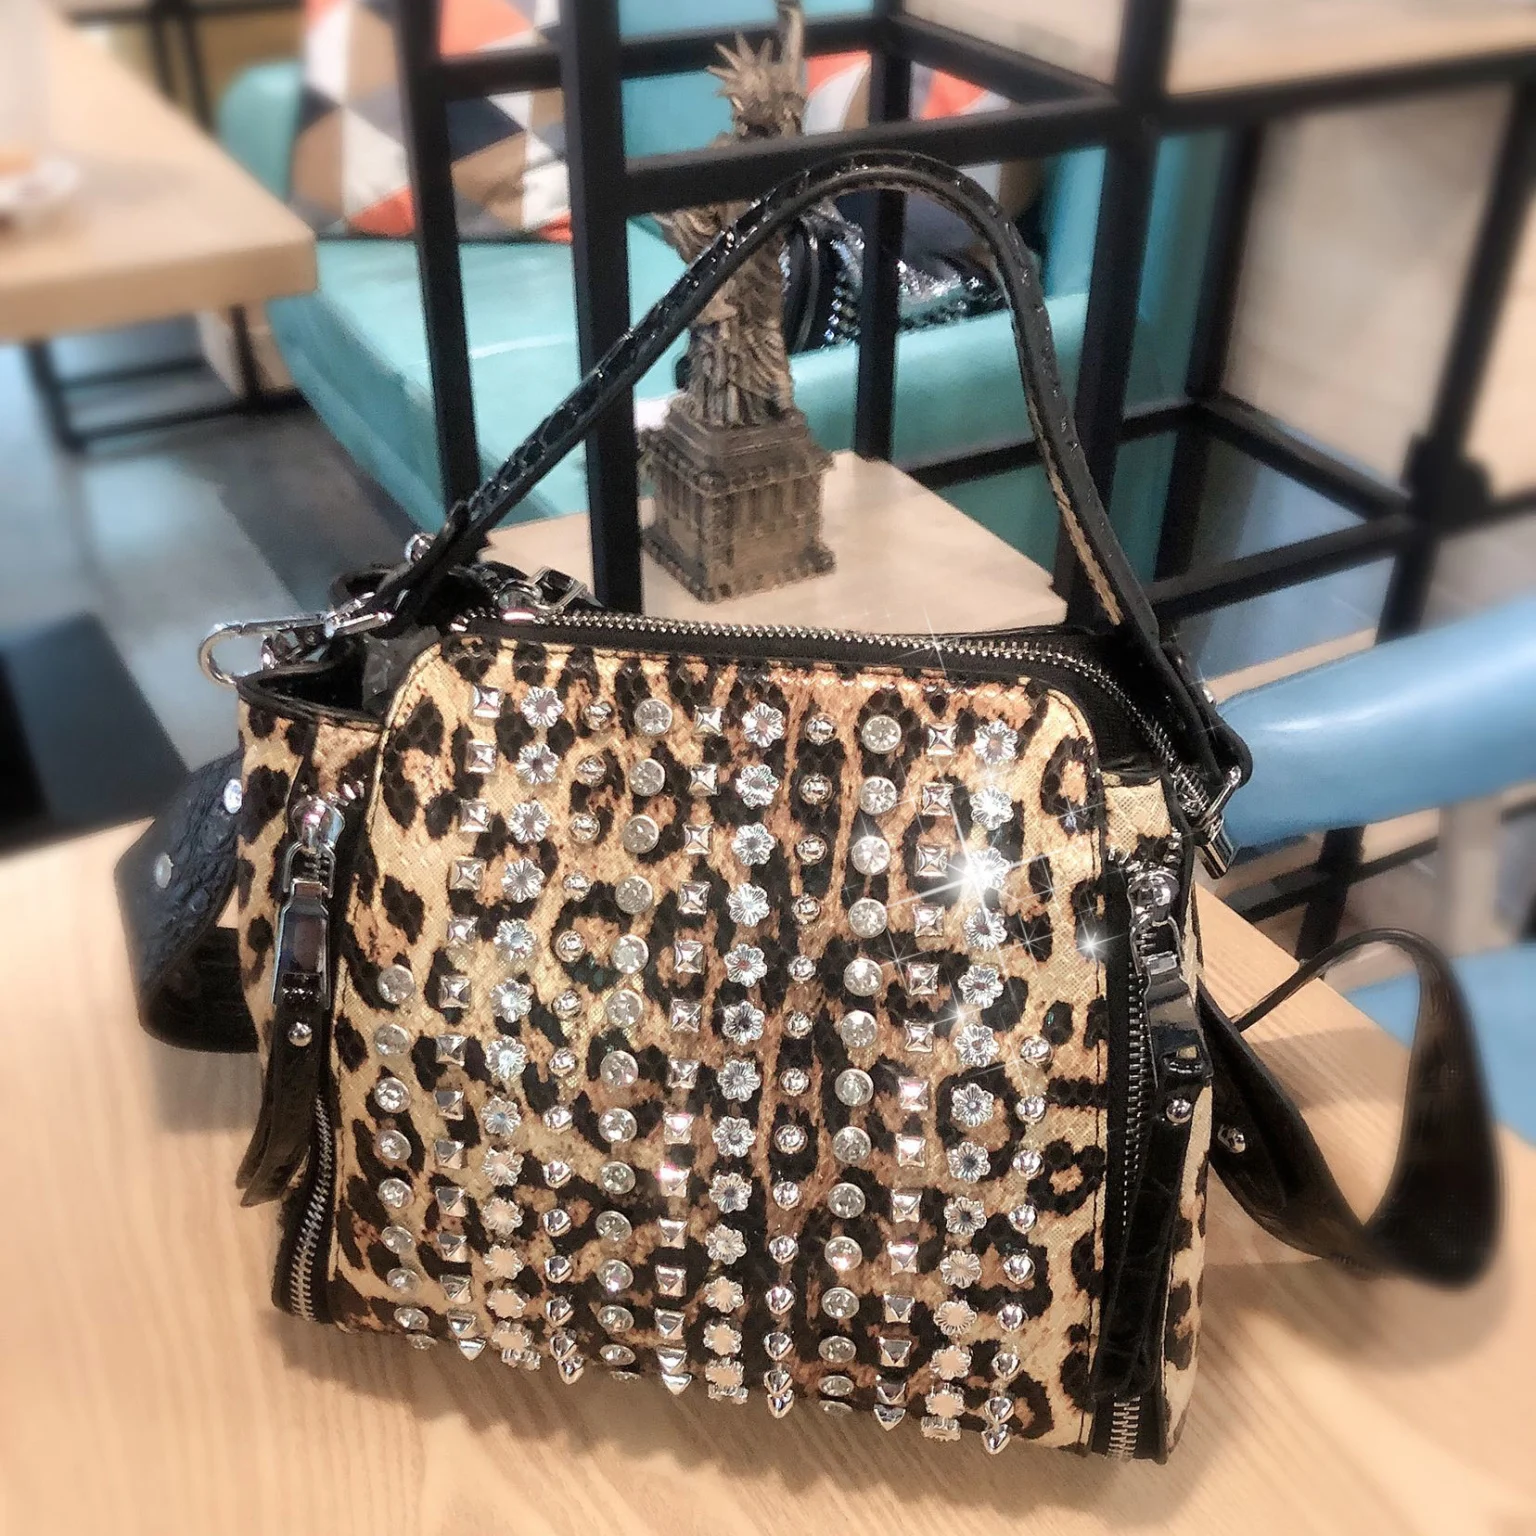 Дамская сумочка, сумка на плечо для женщин 2019, Высококачественная модная кожаная сумка, новая сумка Стразы с заклепками, Женская Повседневн... от AliExpress RU&CIS NEW